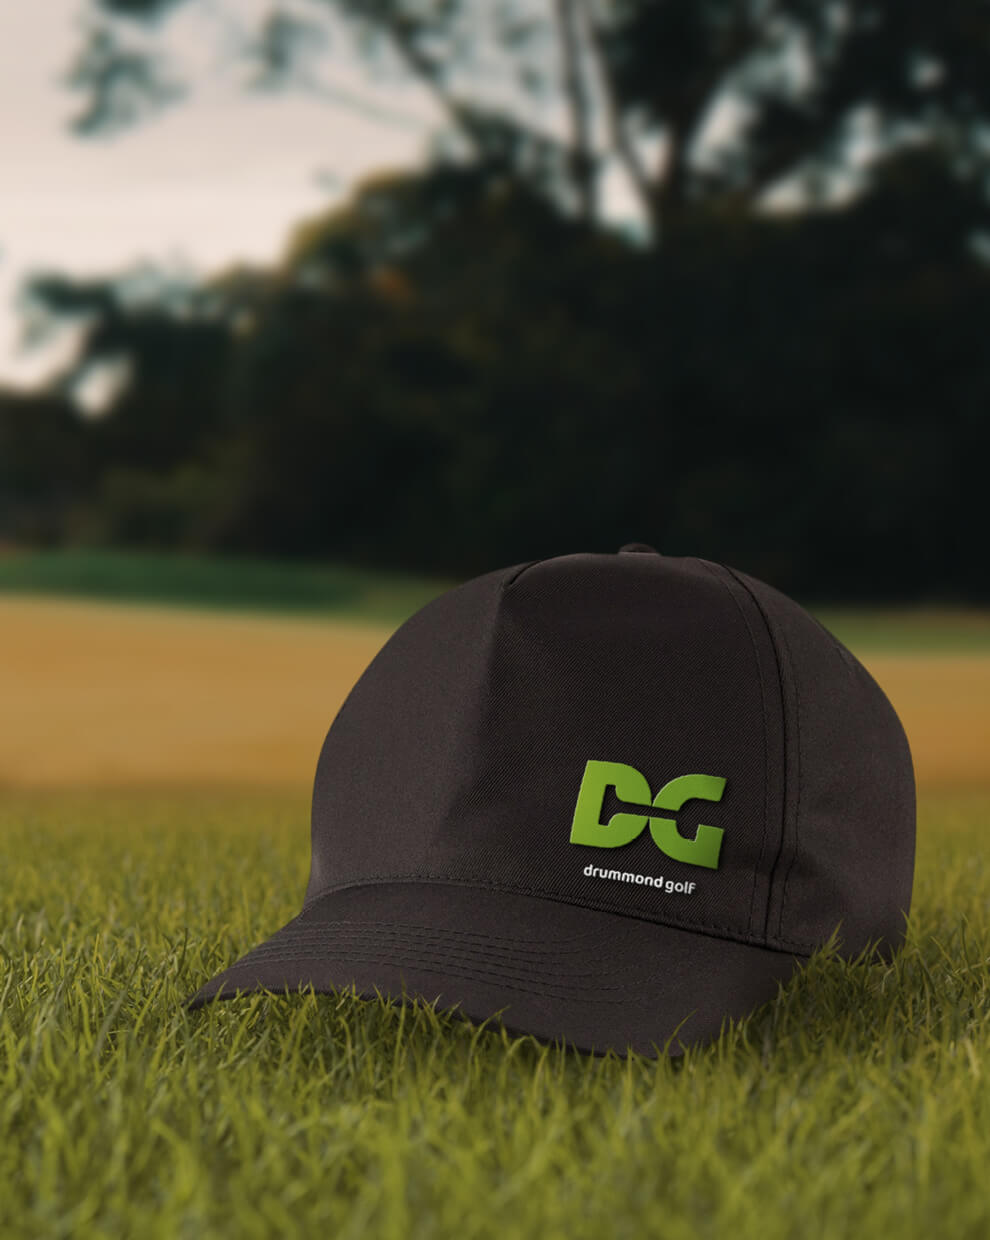 Drummond Golf branded hat